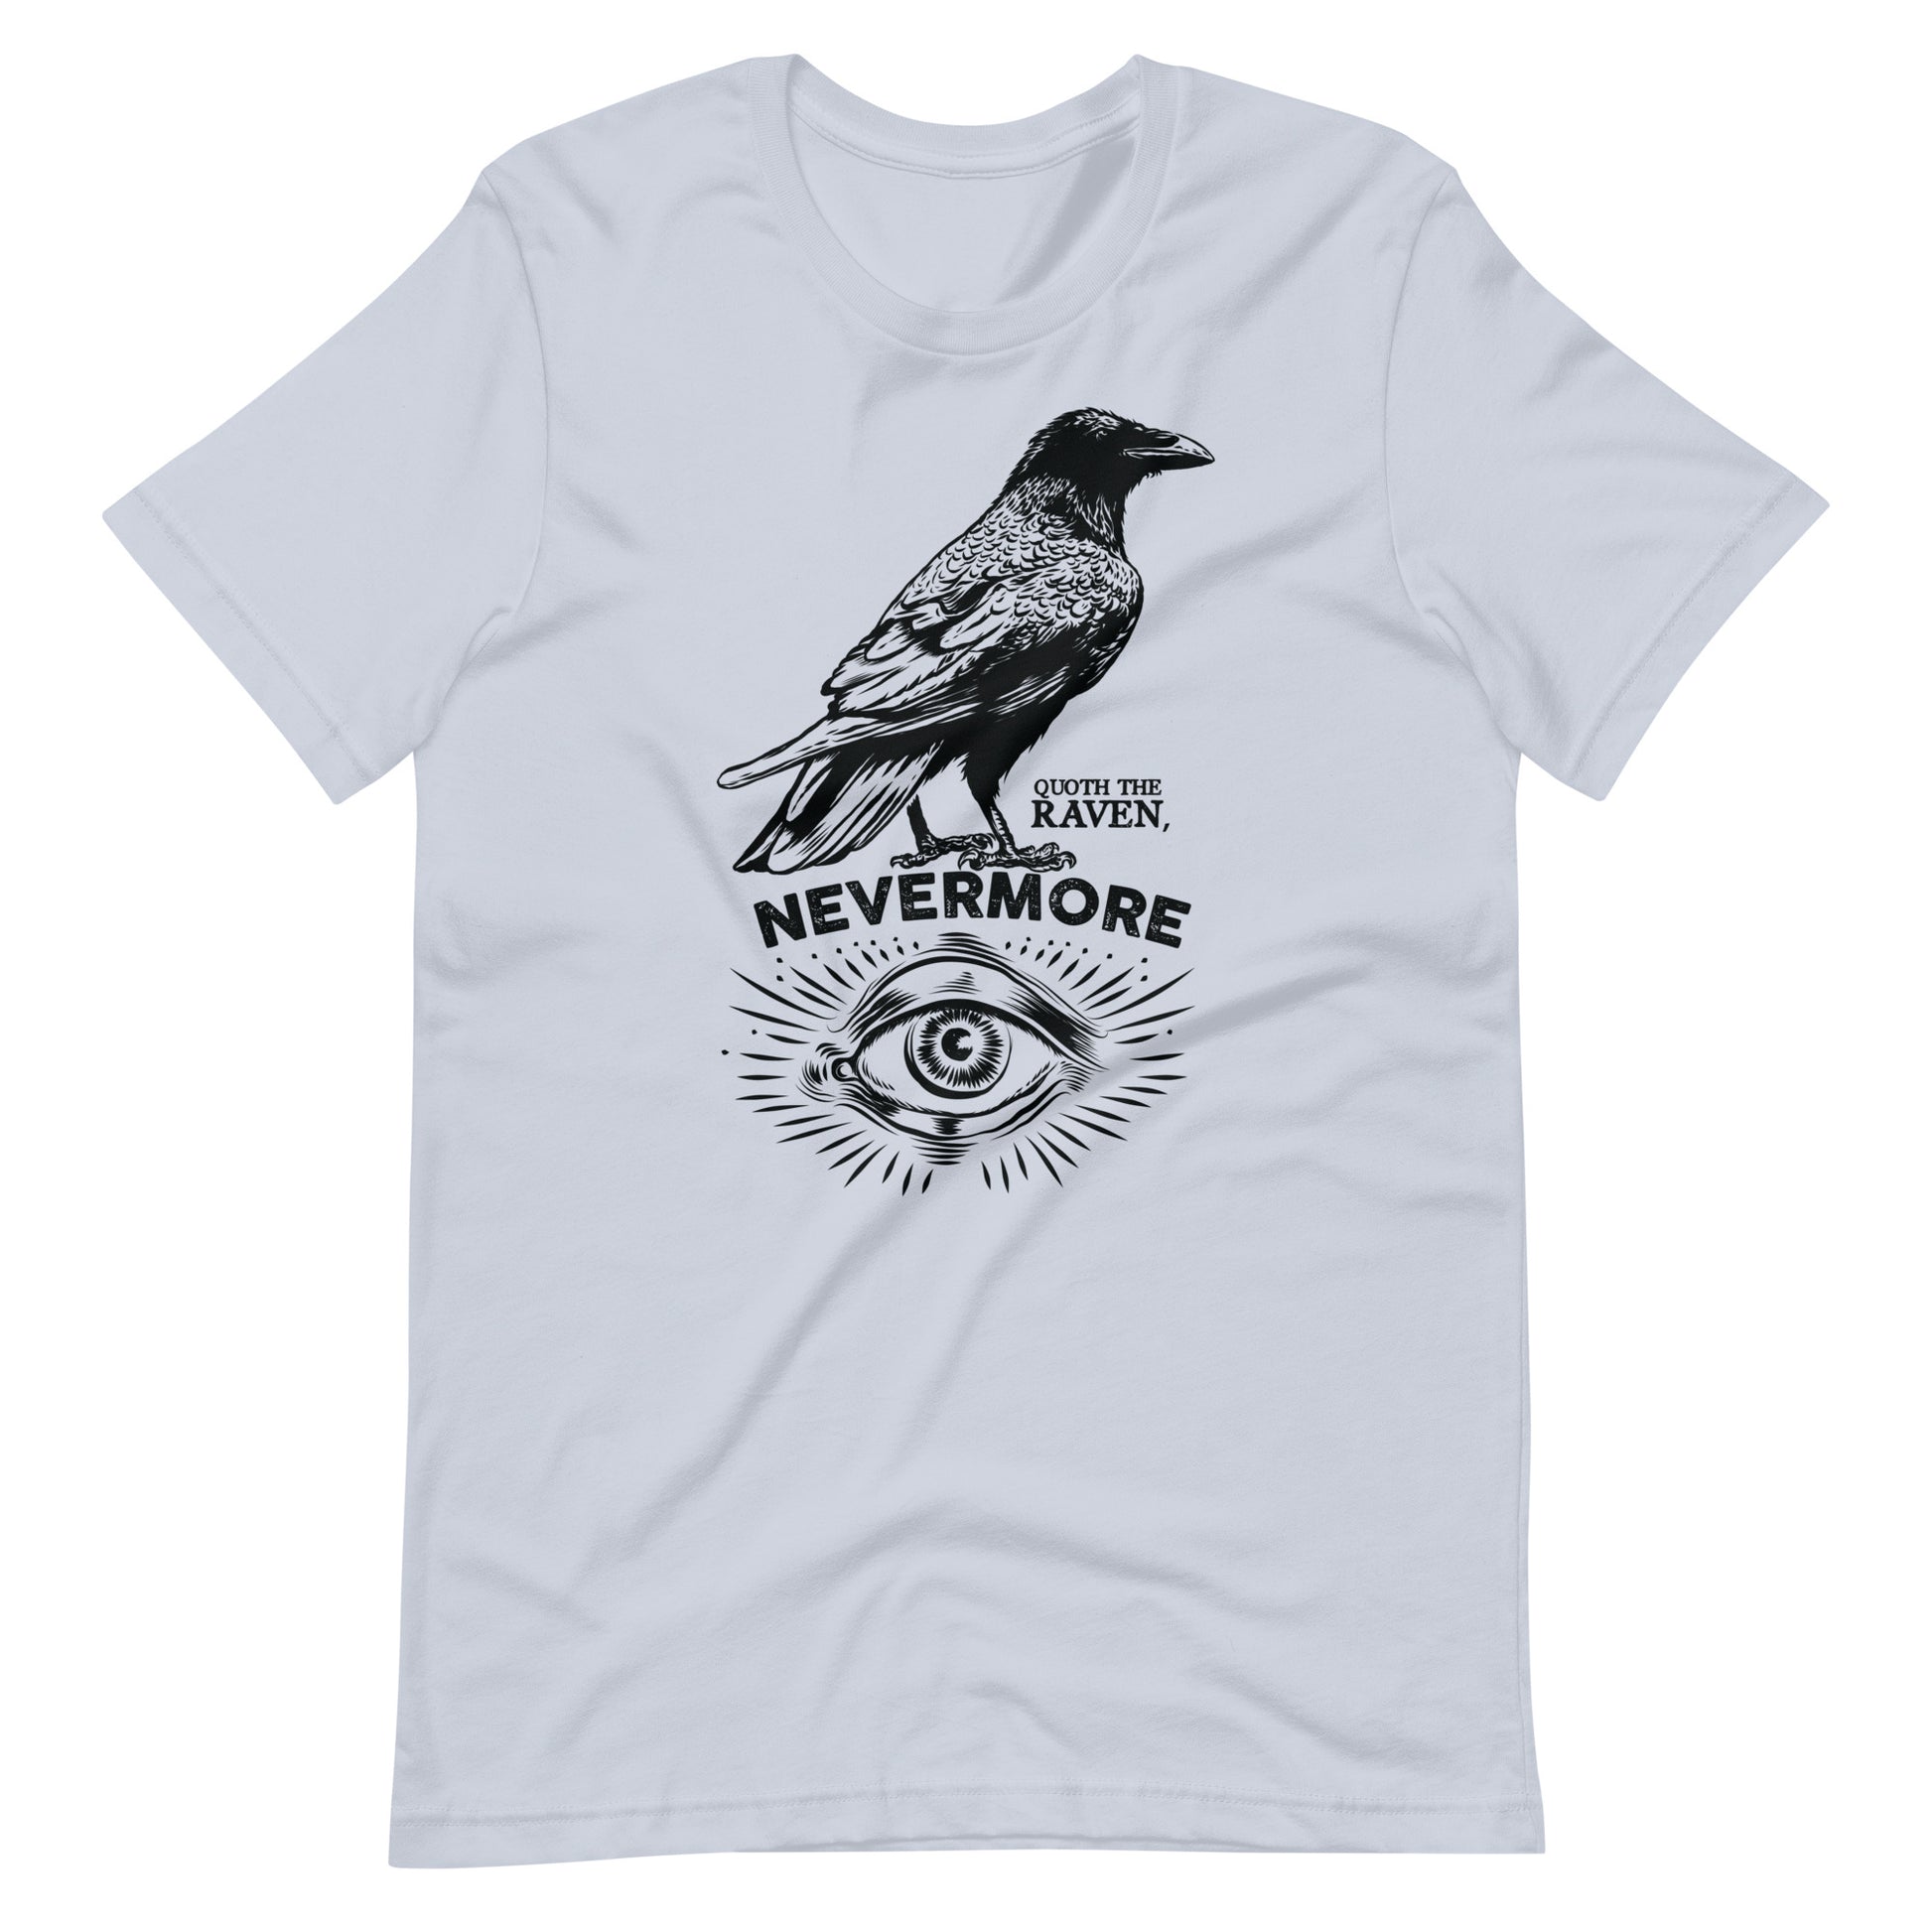 Quoth the Raven Nevermore - Men's t-shirt - Light Blue Front